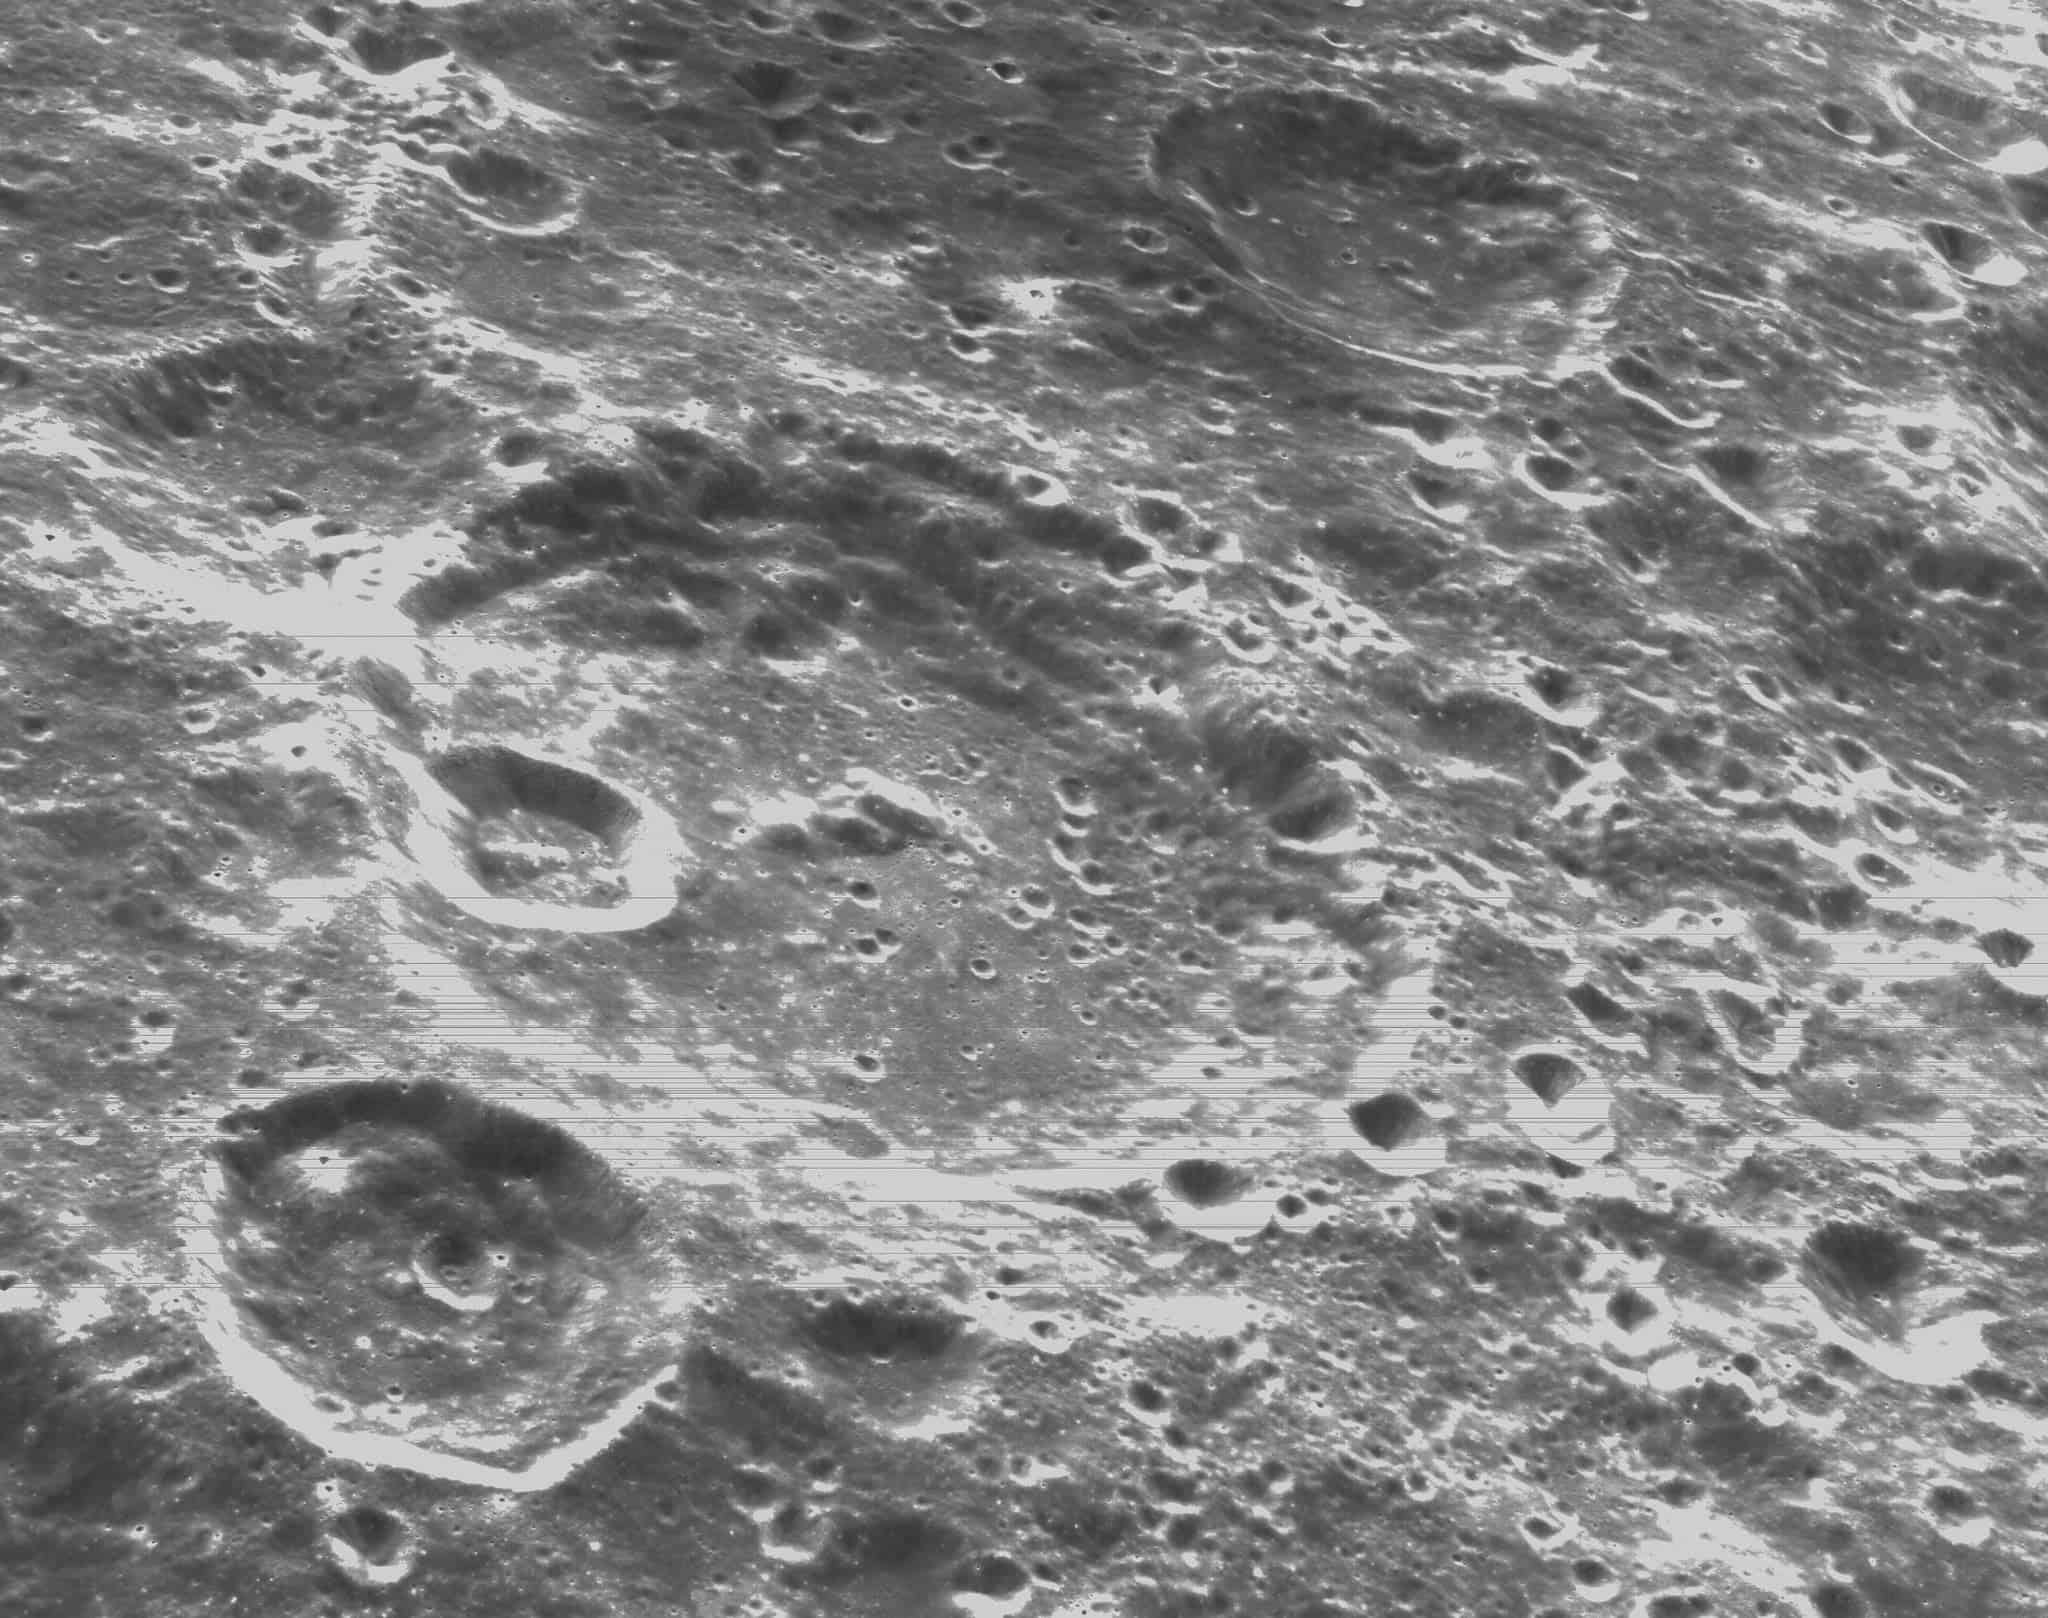 أرسلت أوريون صوراً جديدة للحفر على سطح القمر، والتي يُحتمل أن تحتوي على الماء والجليد.